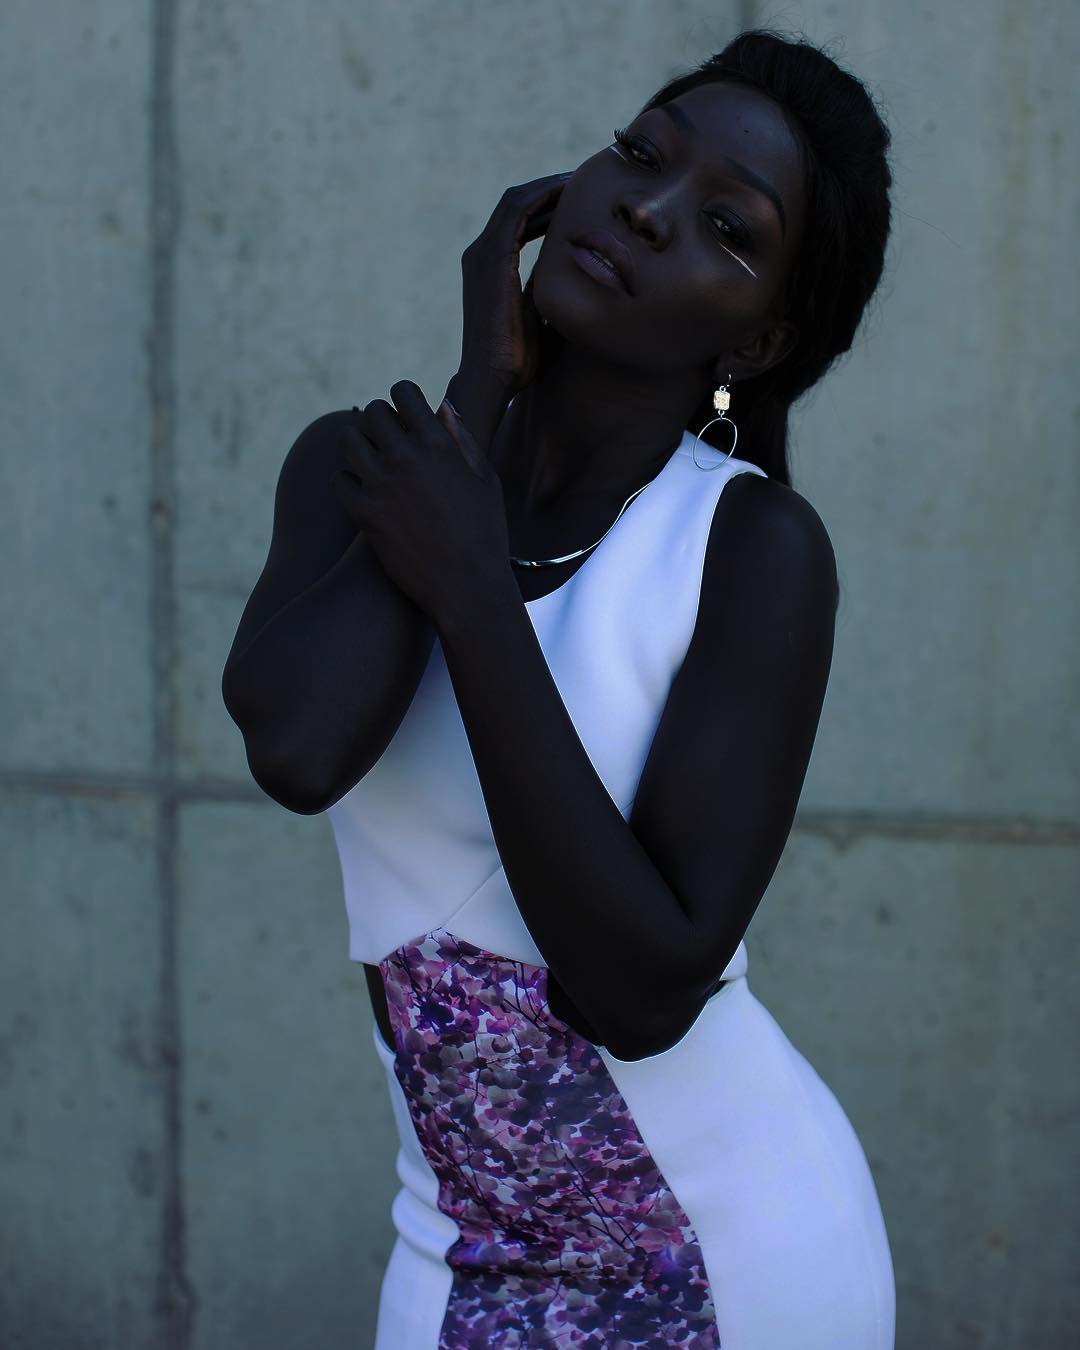 Белая черная негритянка. Няким Гатвеч. Нуаким Гатвеч модель. Нуаким Гатвеч модель из Южного Судана. Суданская модель Ньяким.